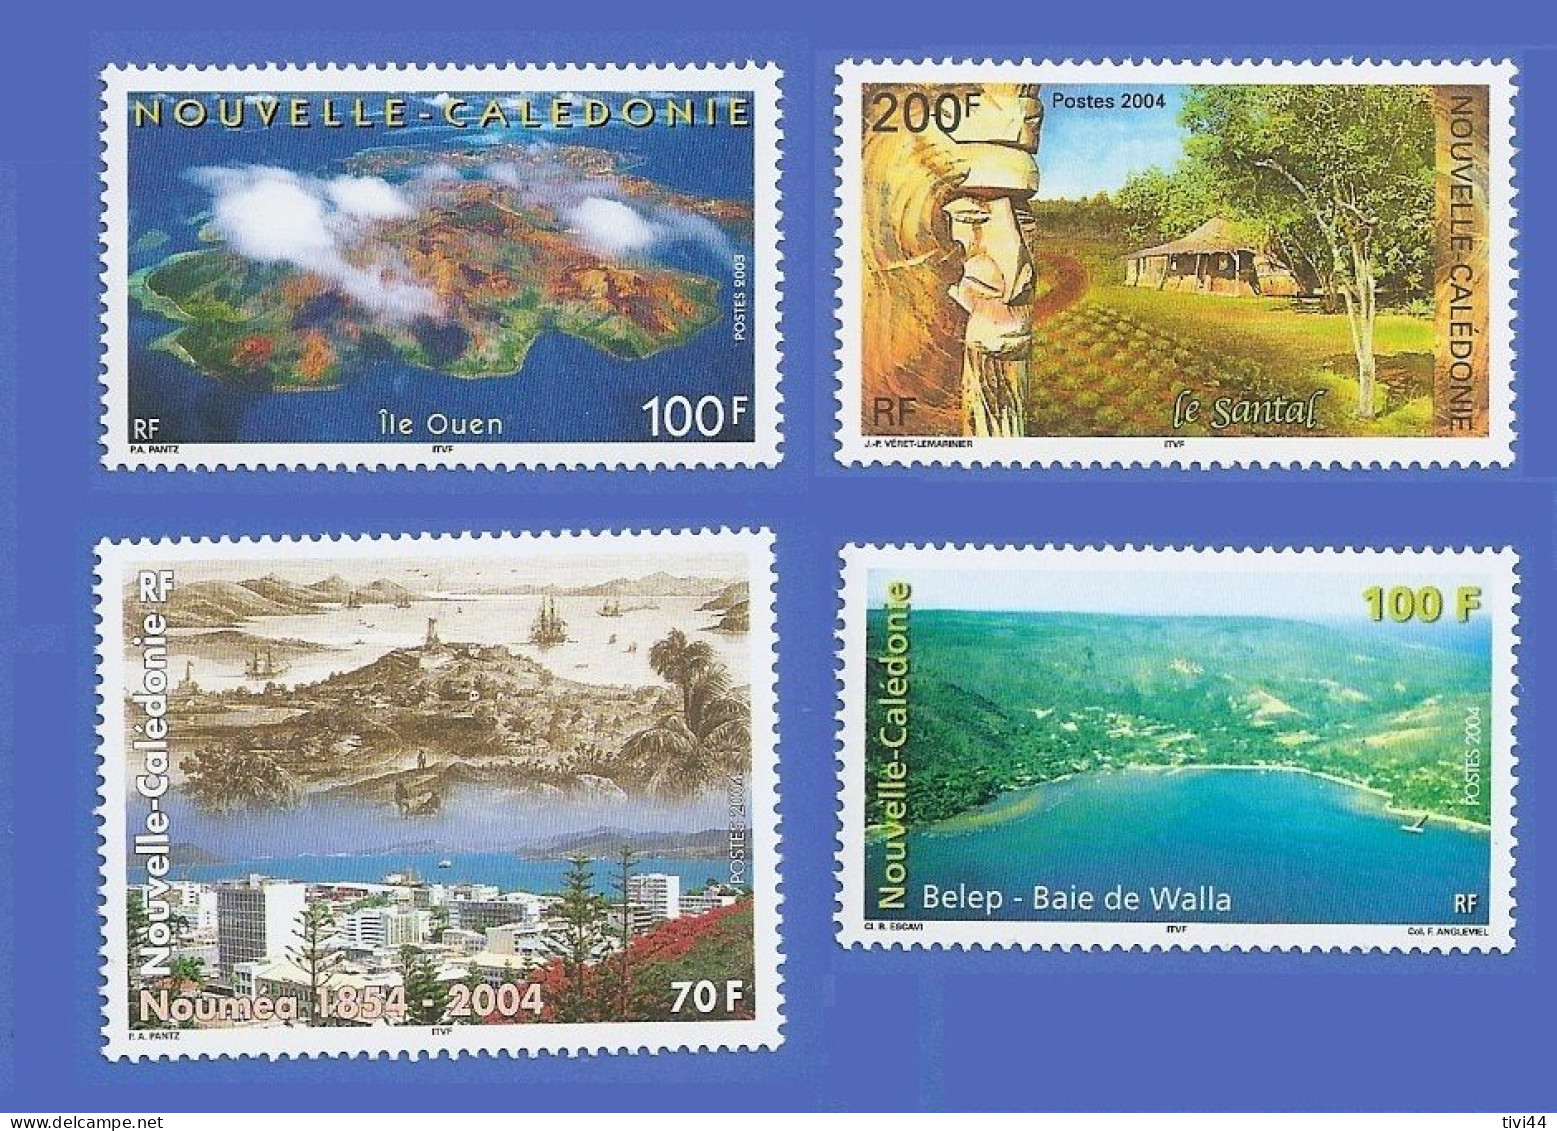 NOUVELLE CALÉDONIE 908 + 918 + 922 + 934 NEUFS ** ARBRE LE SANTAL + NOUMÉA + PAYSAGES RÉGIONAUX - Unused Stamps